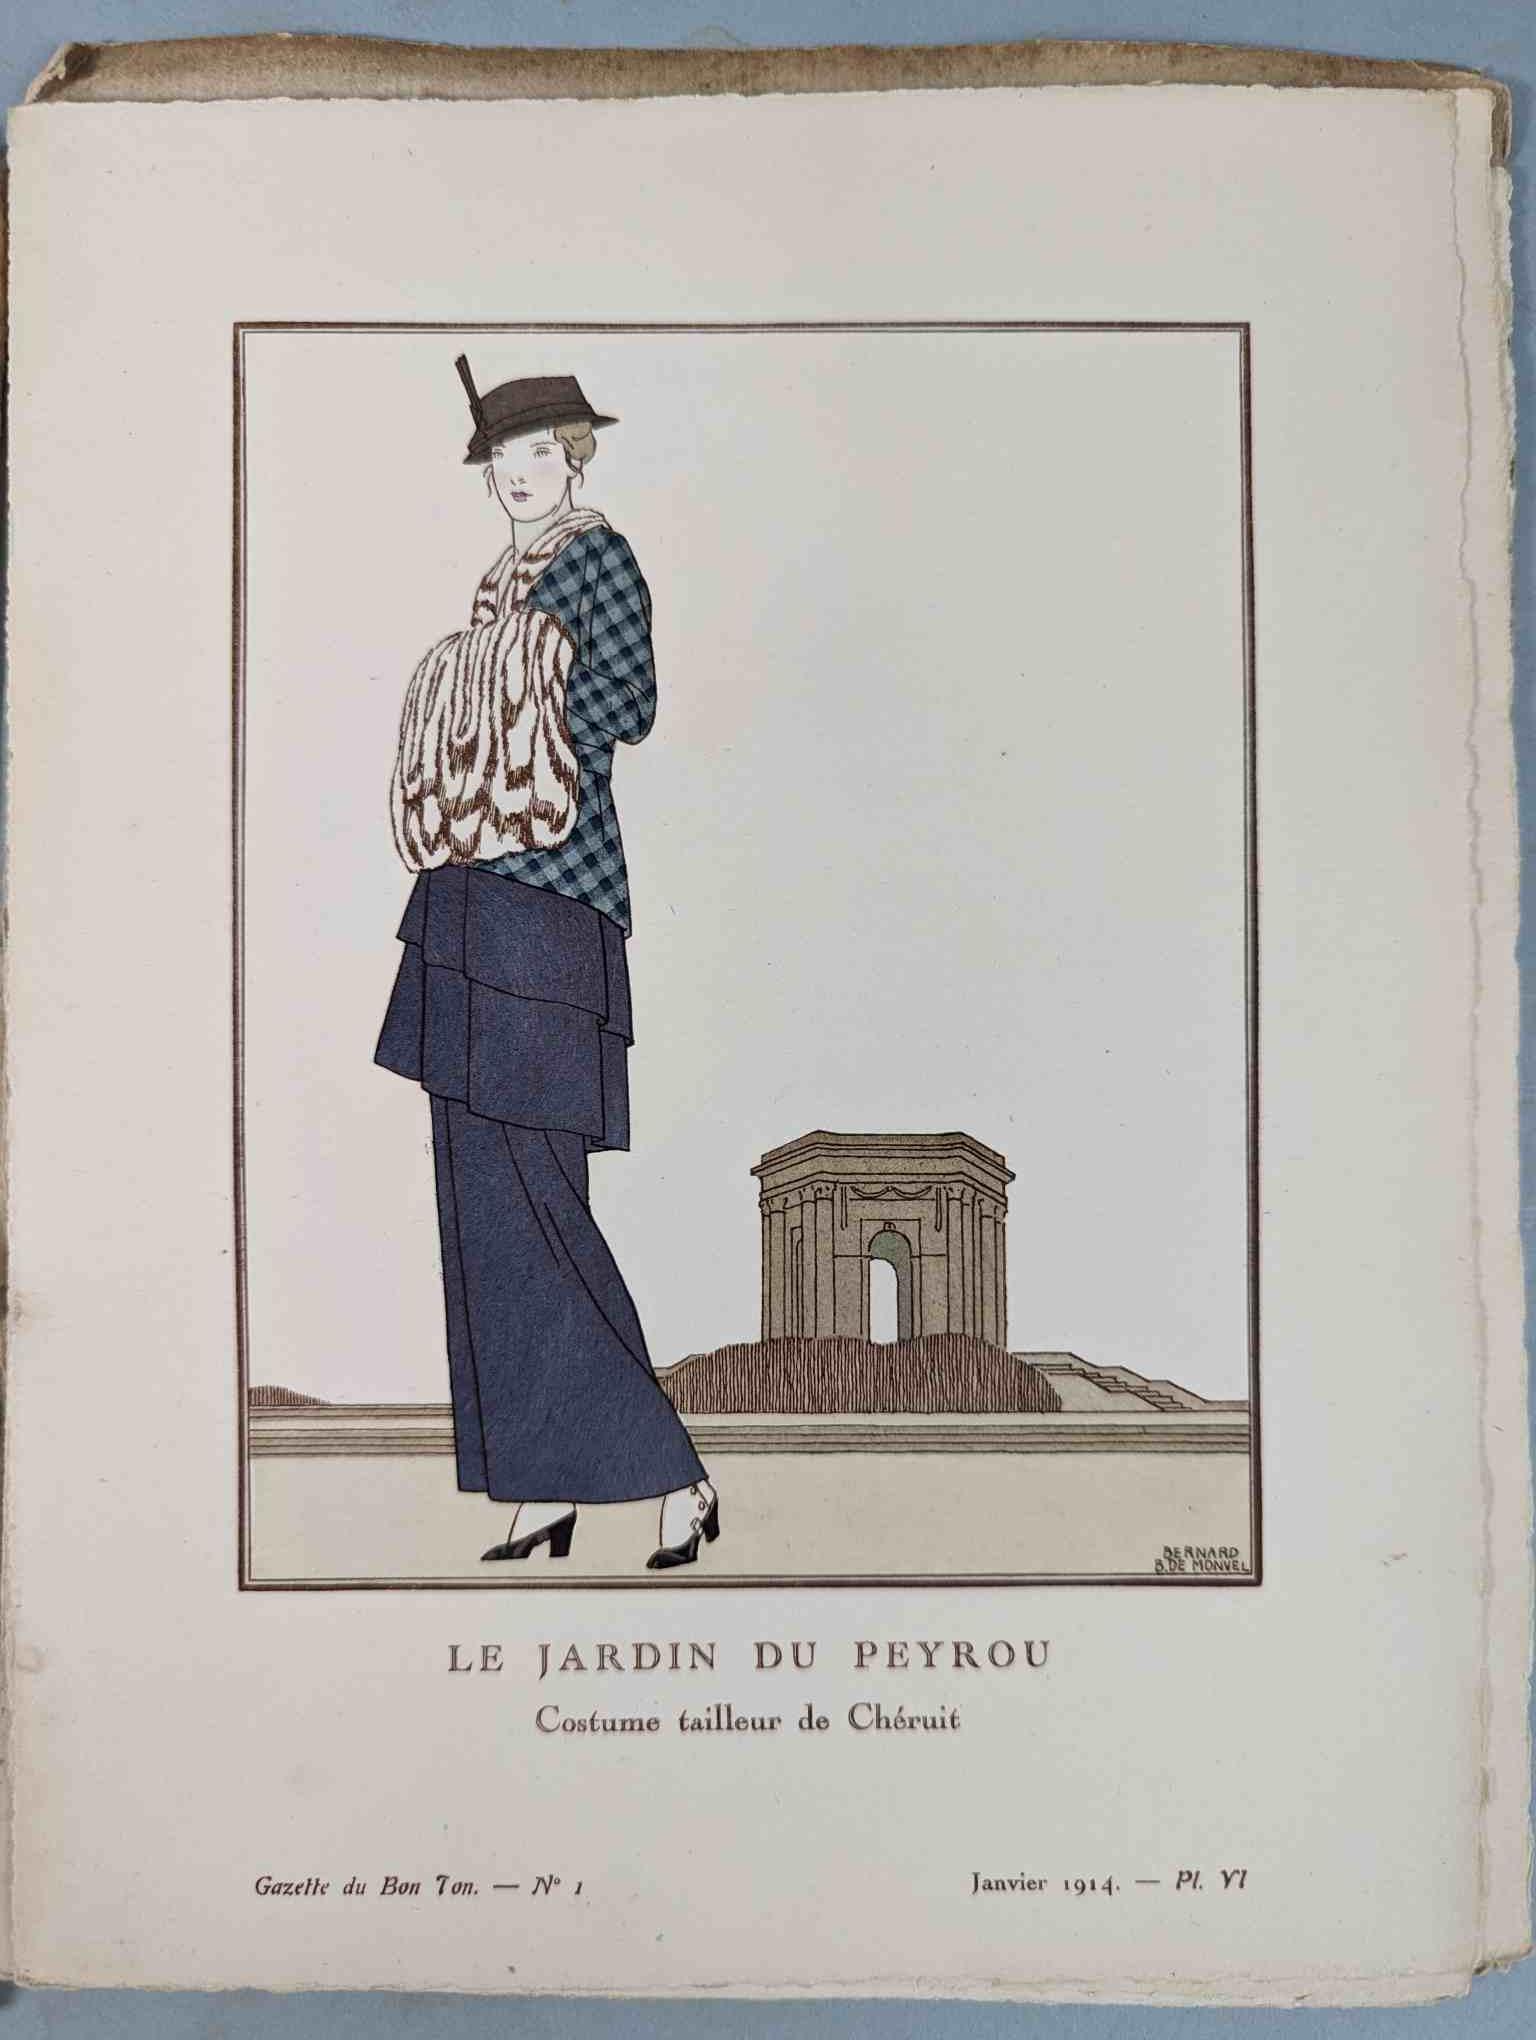 FASHION. VOGEL, Lucien. GAZETTE DU BON TON: Art-Modes & Frivolités, Paris 1913-14, 4 vol. - Image 16 of 54